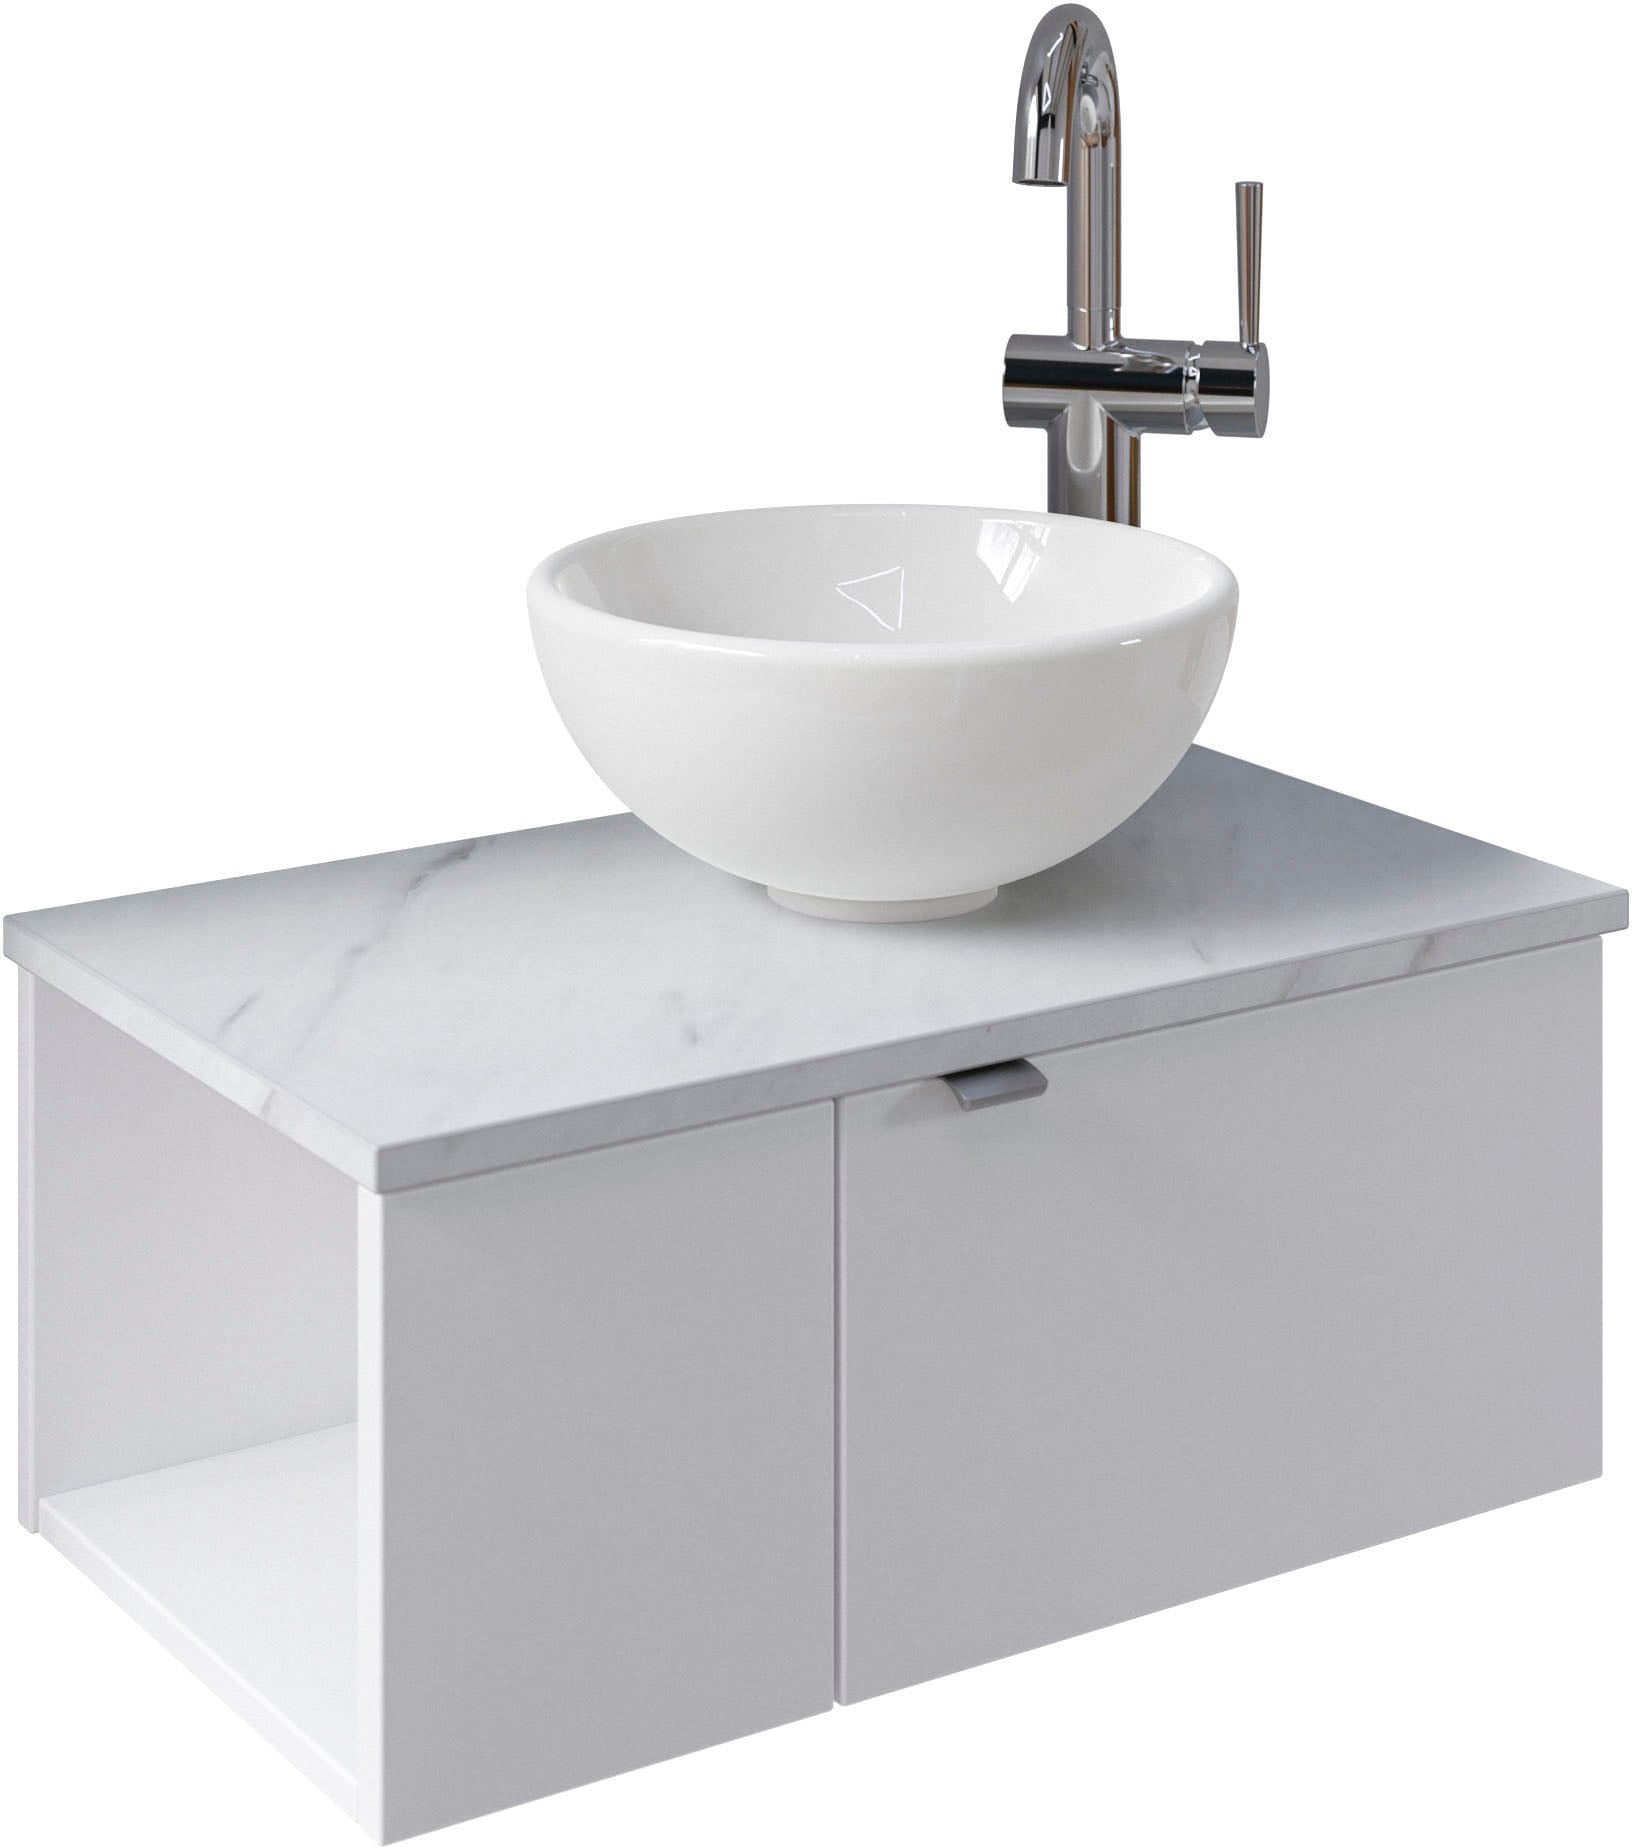 Saphir Waschtisch "Serie 6915 Waschschale mit Unterschrank für Gästebad, Gäste WC", 61 cm breit, 2 Türen, offenes Fach, 